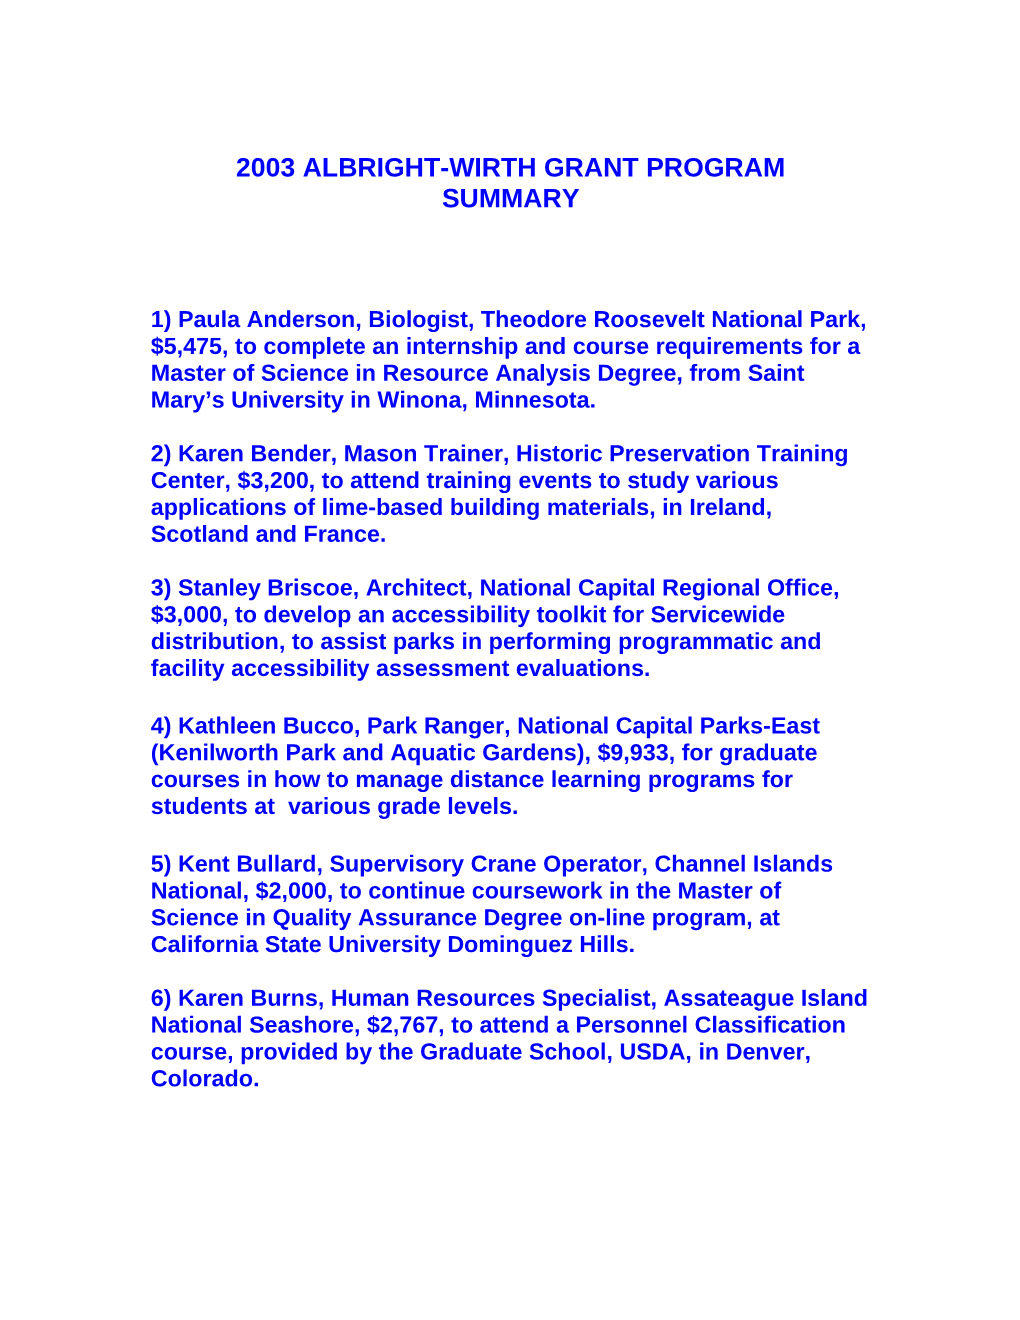 2003 Albright-Wirth Grant Program